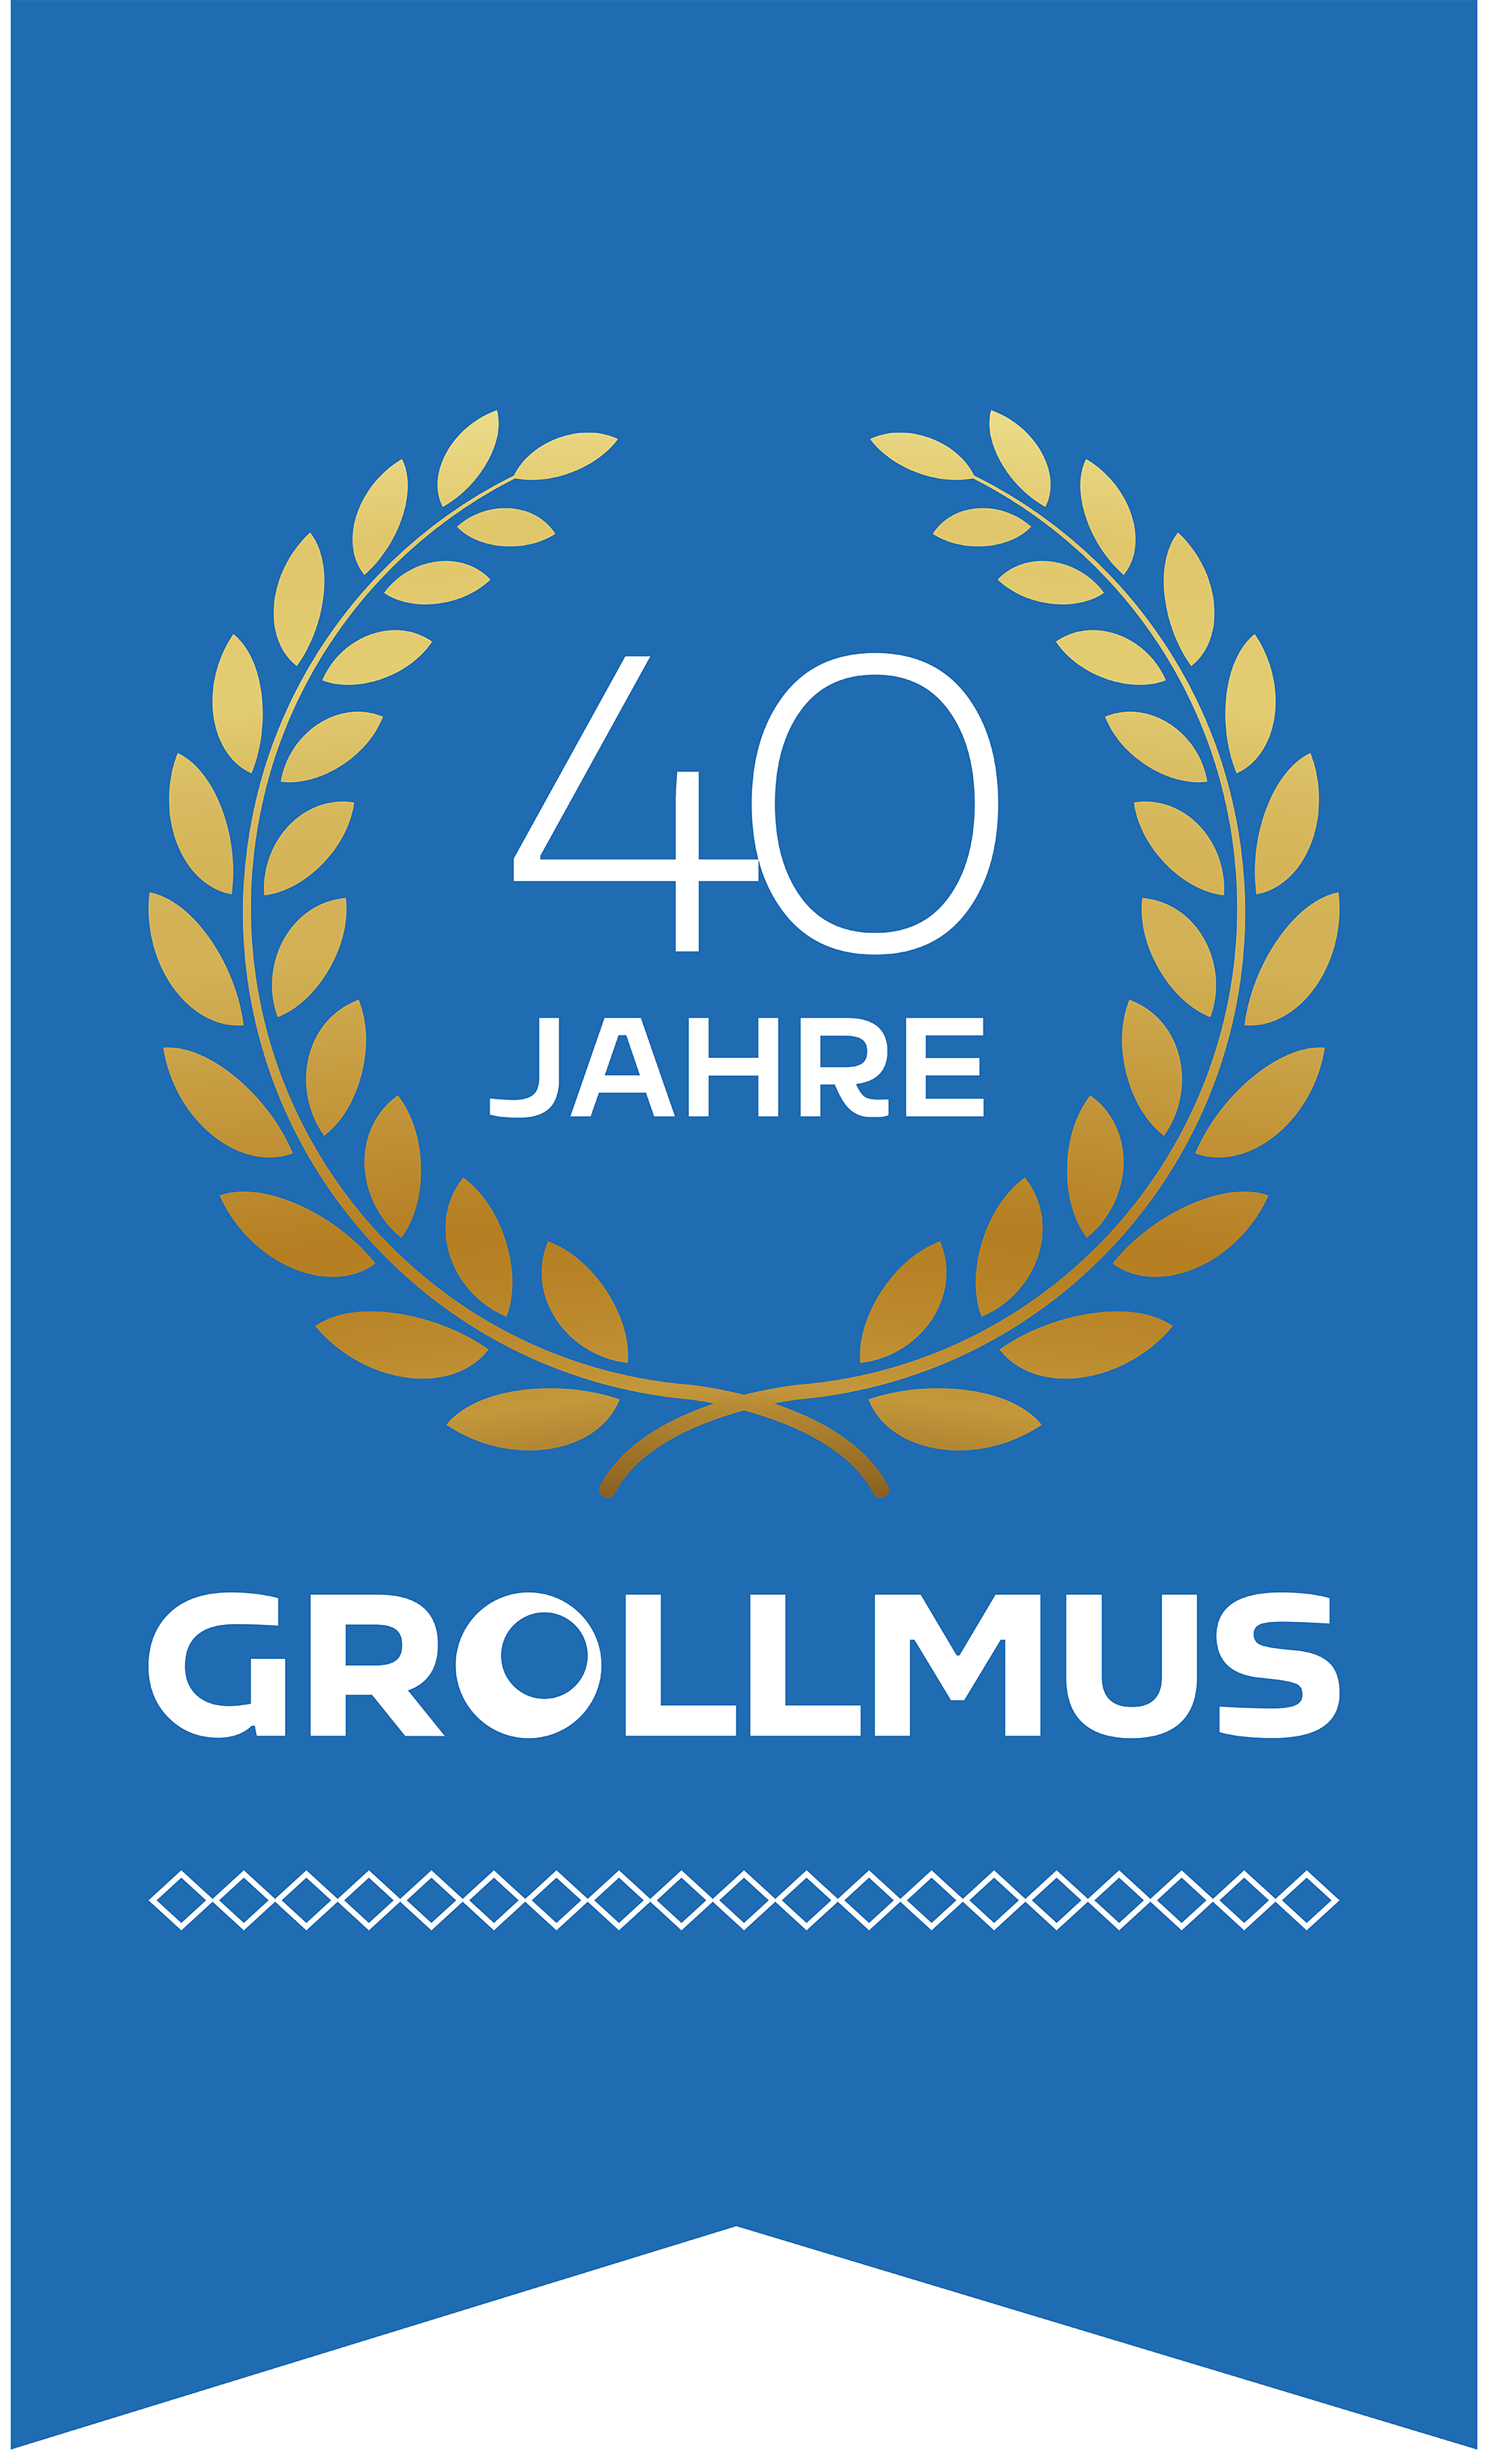 40 Jahre Grollmus GmbH